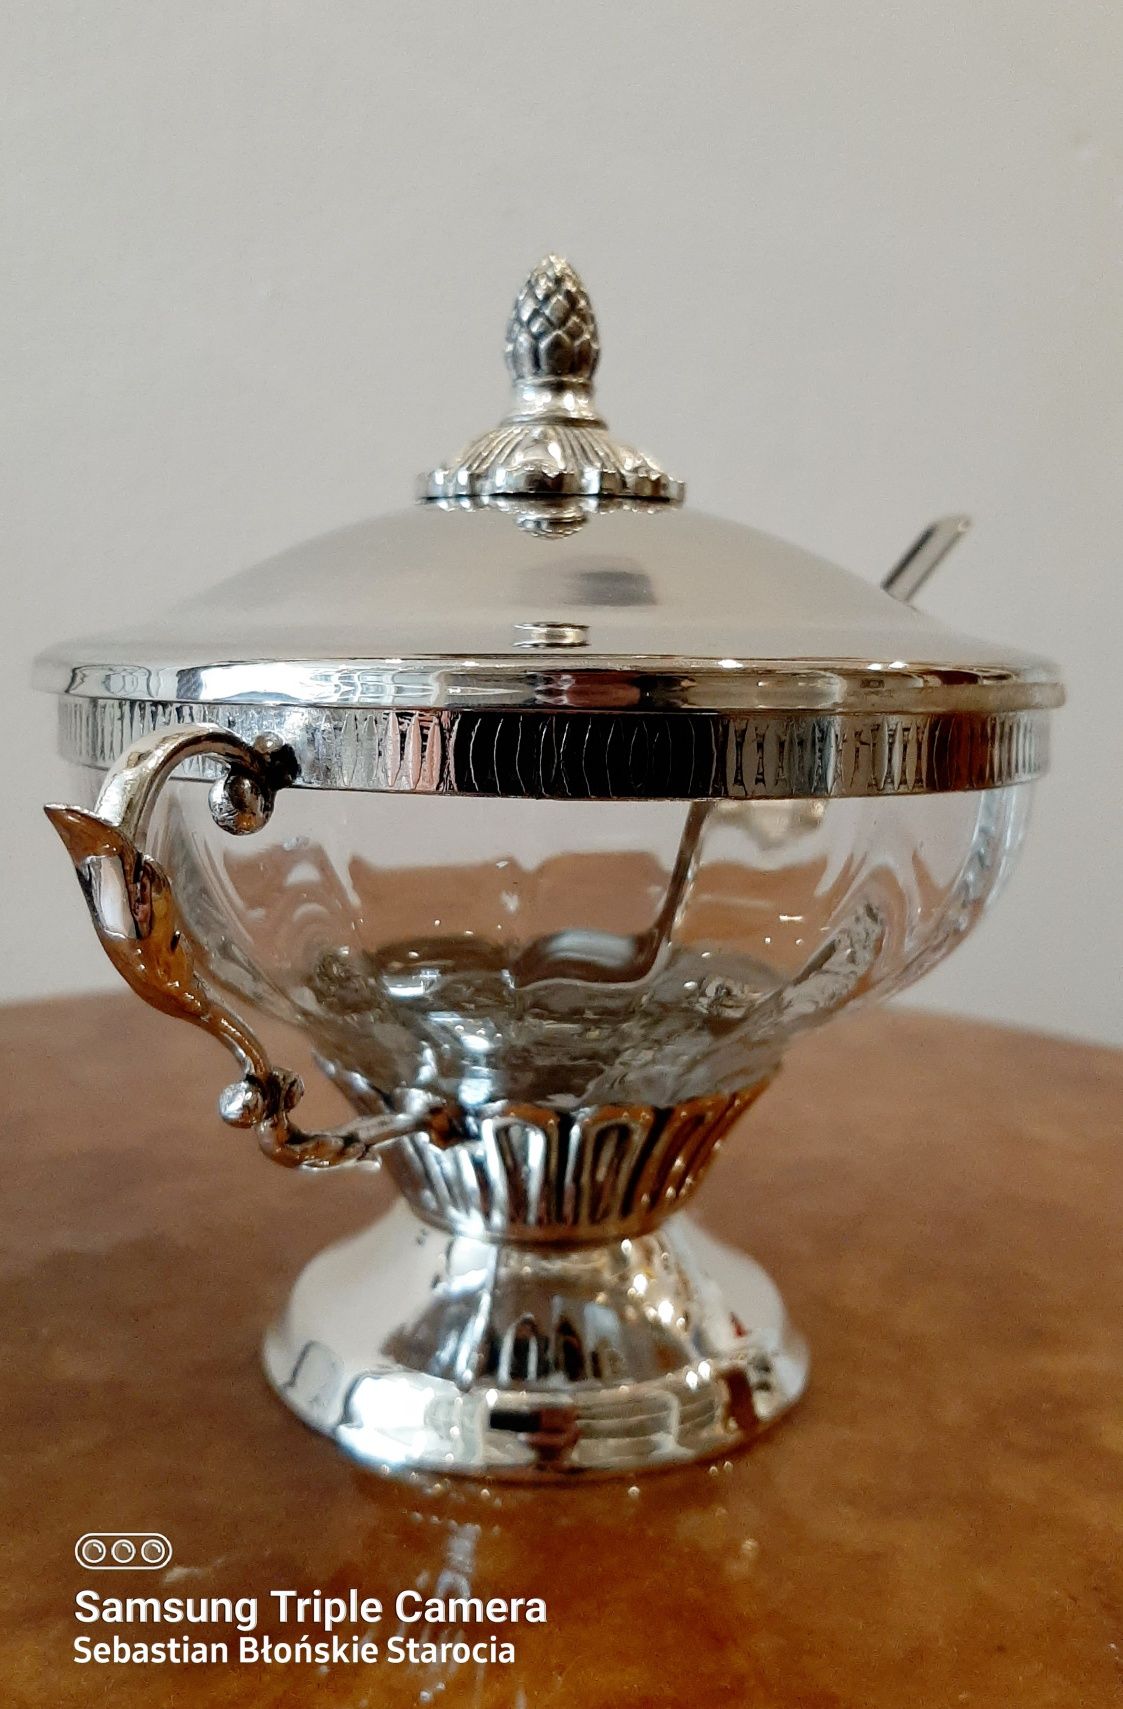 Śliczna Cukiernica srebrzona z łyżeczką i szklanym wkładem ornamenty